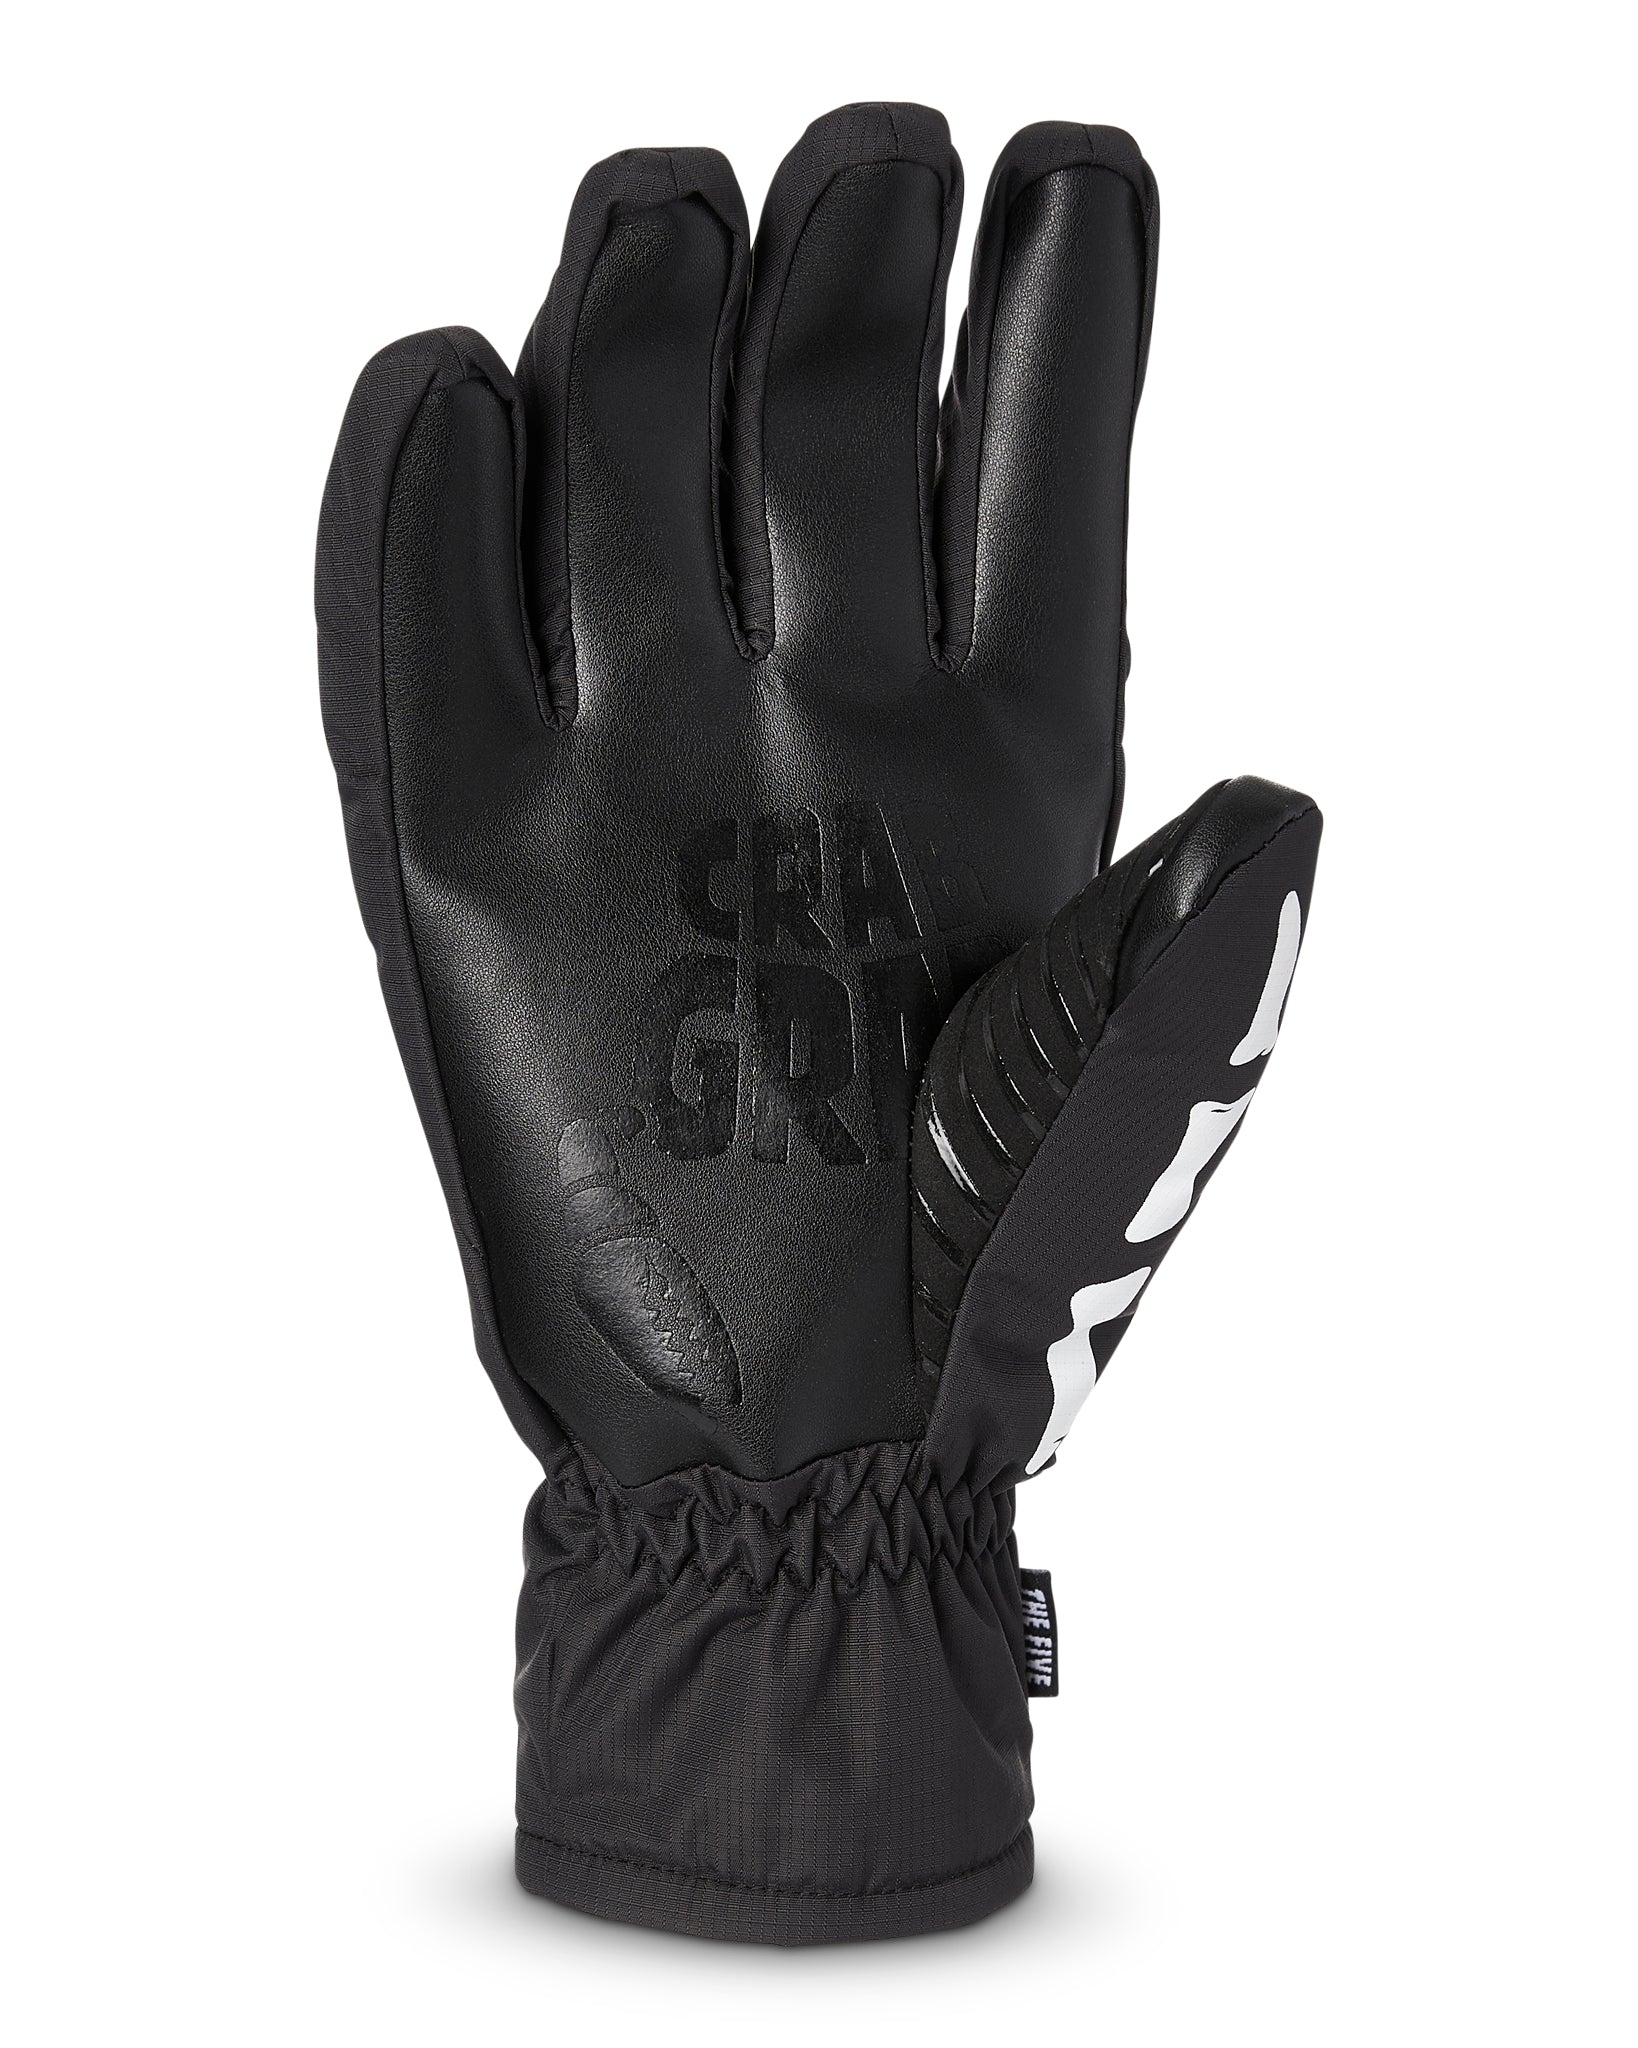 Crab Grab - Five Glove - Snowboard Gloves - Unisex - Cream